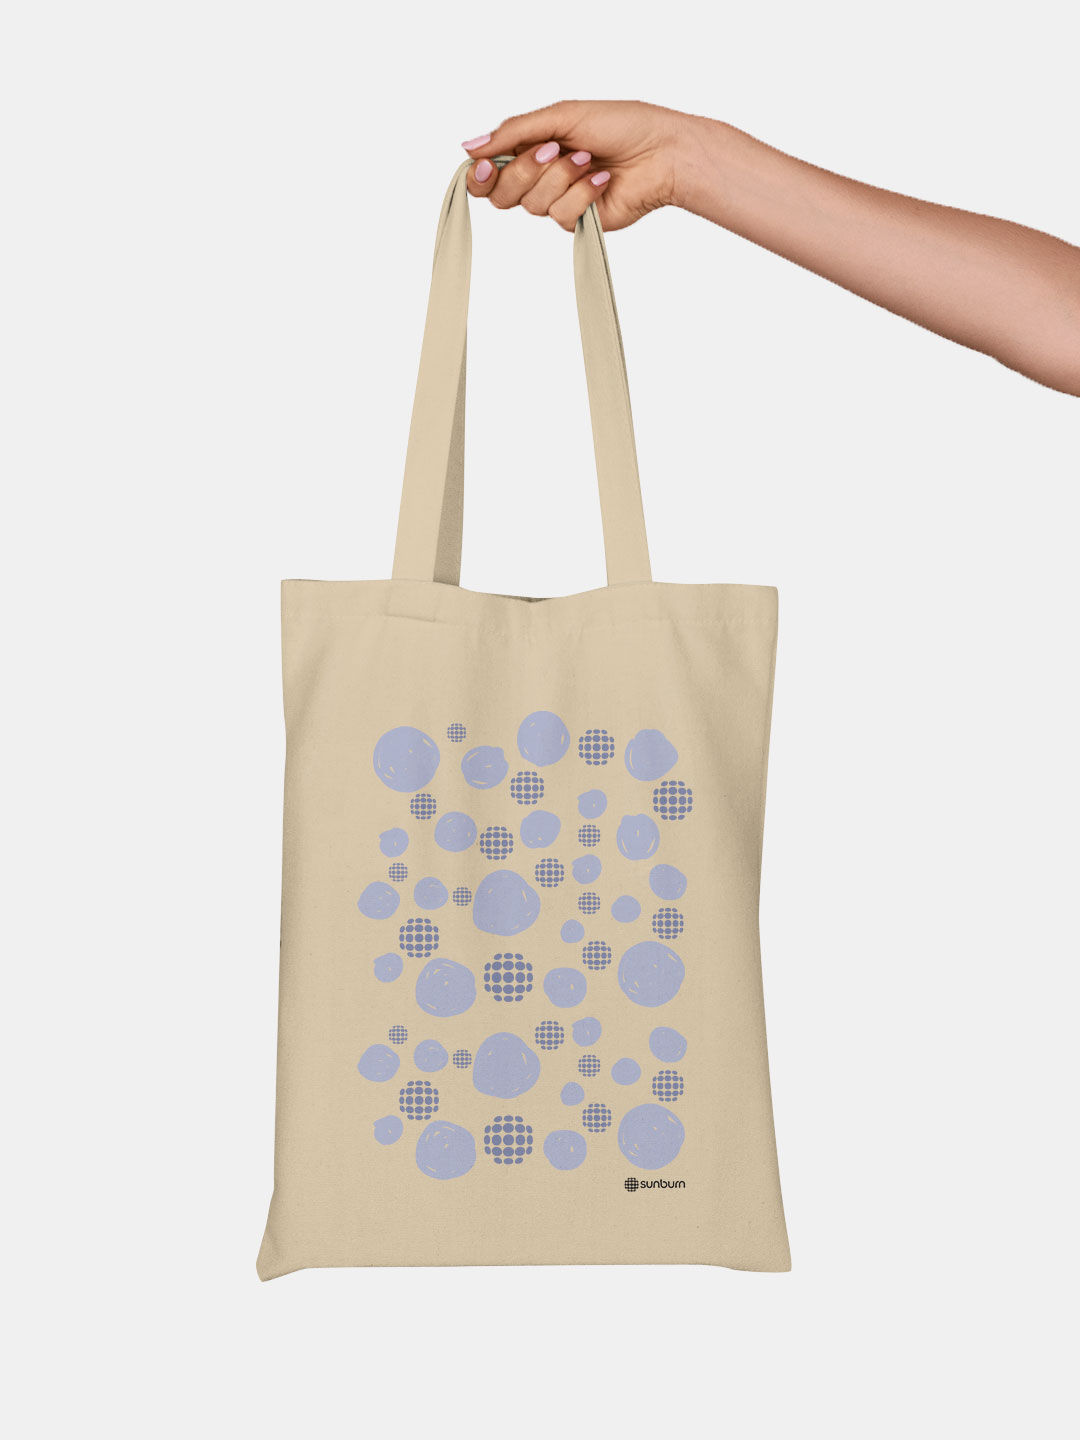 Buy Circle Sunburn - Canvas Tote Bag Tote Bags Online